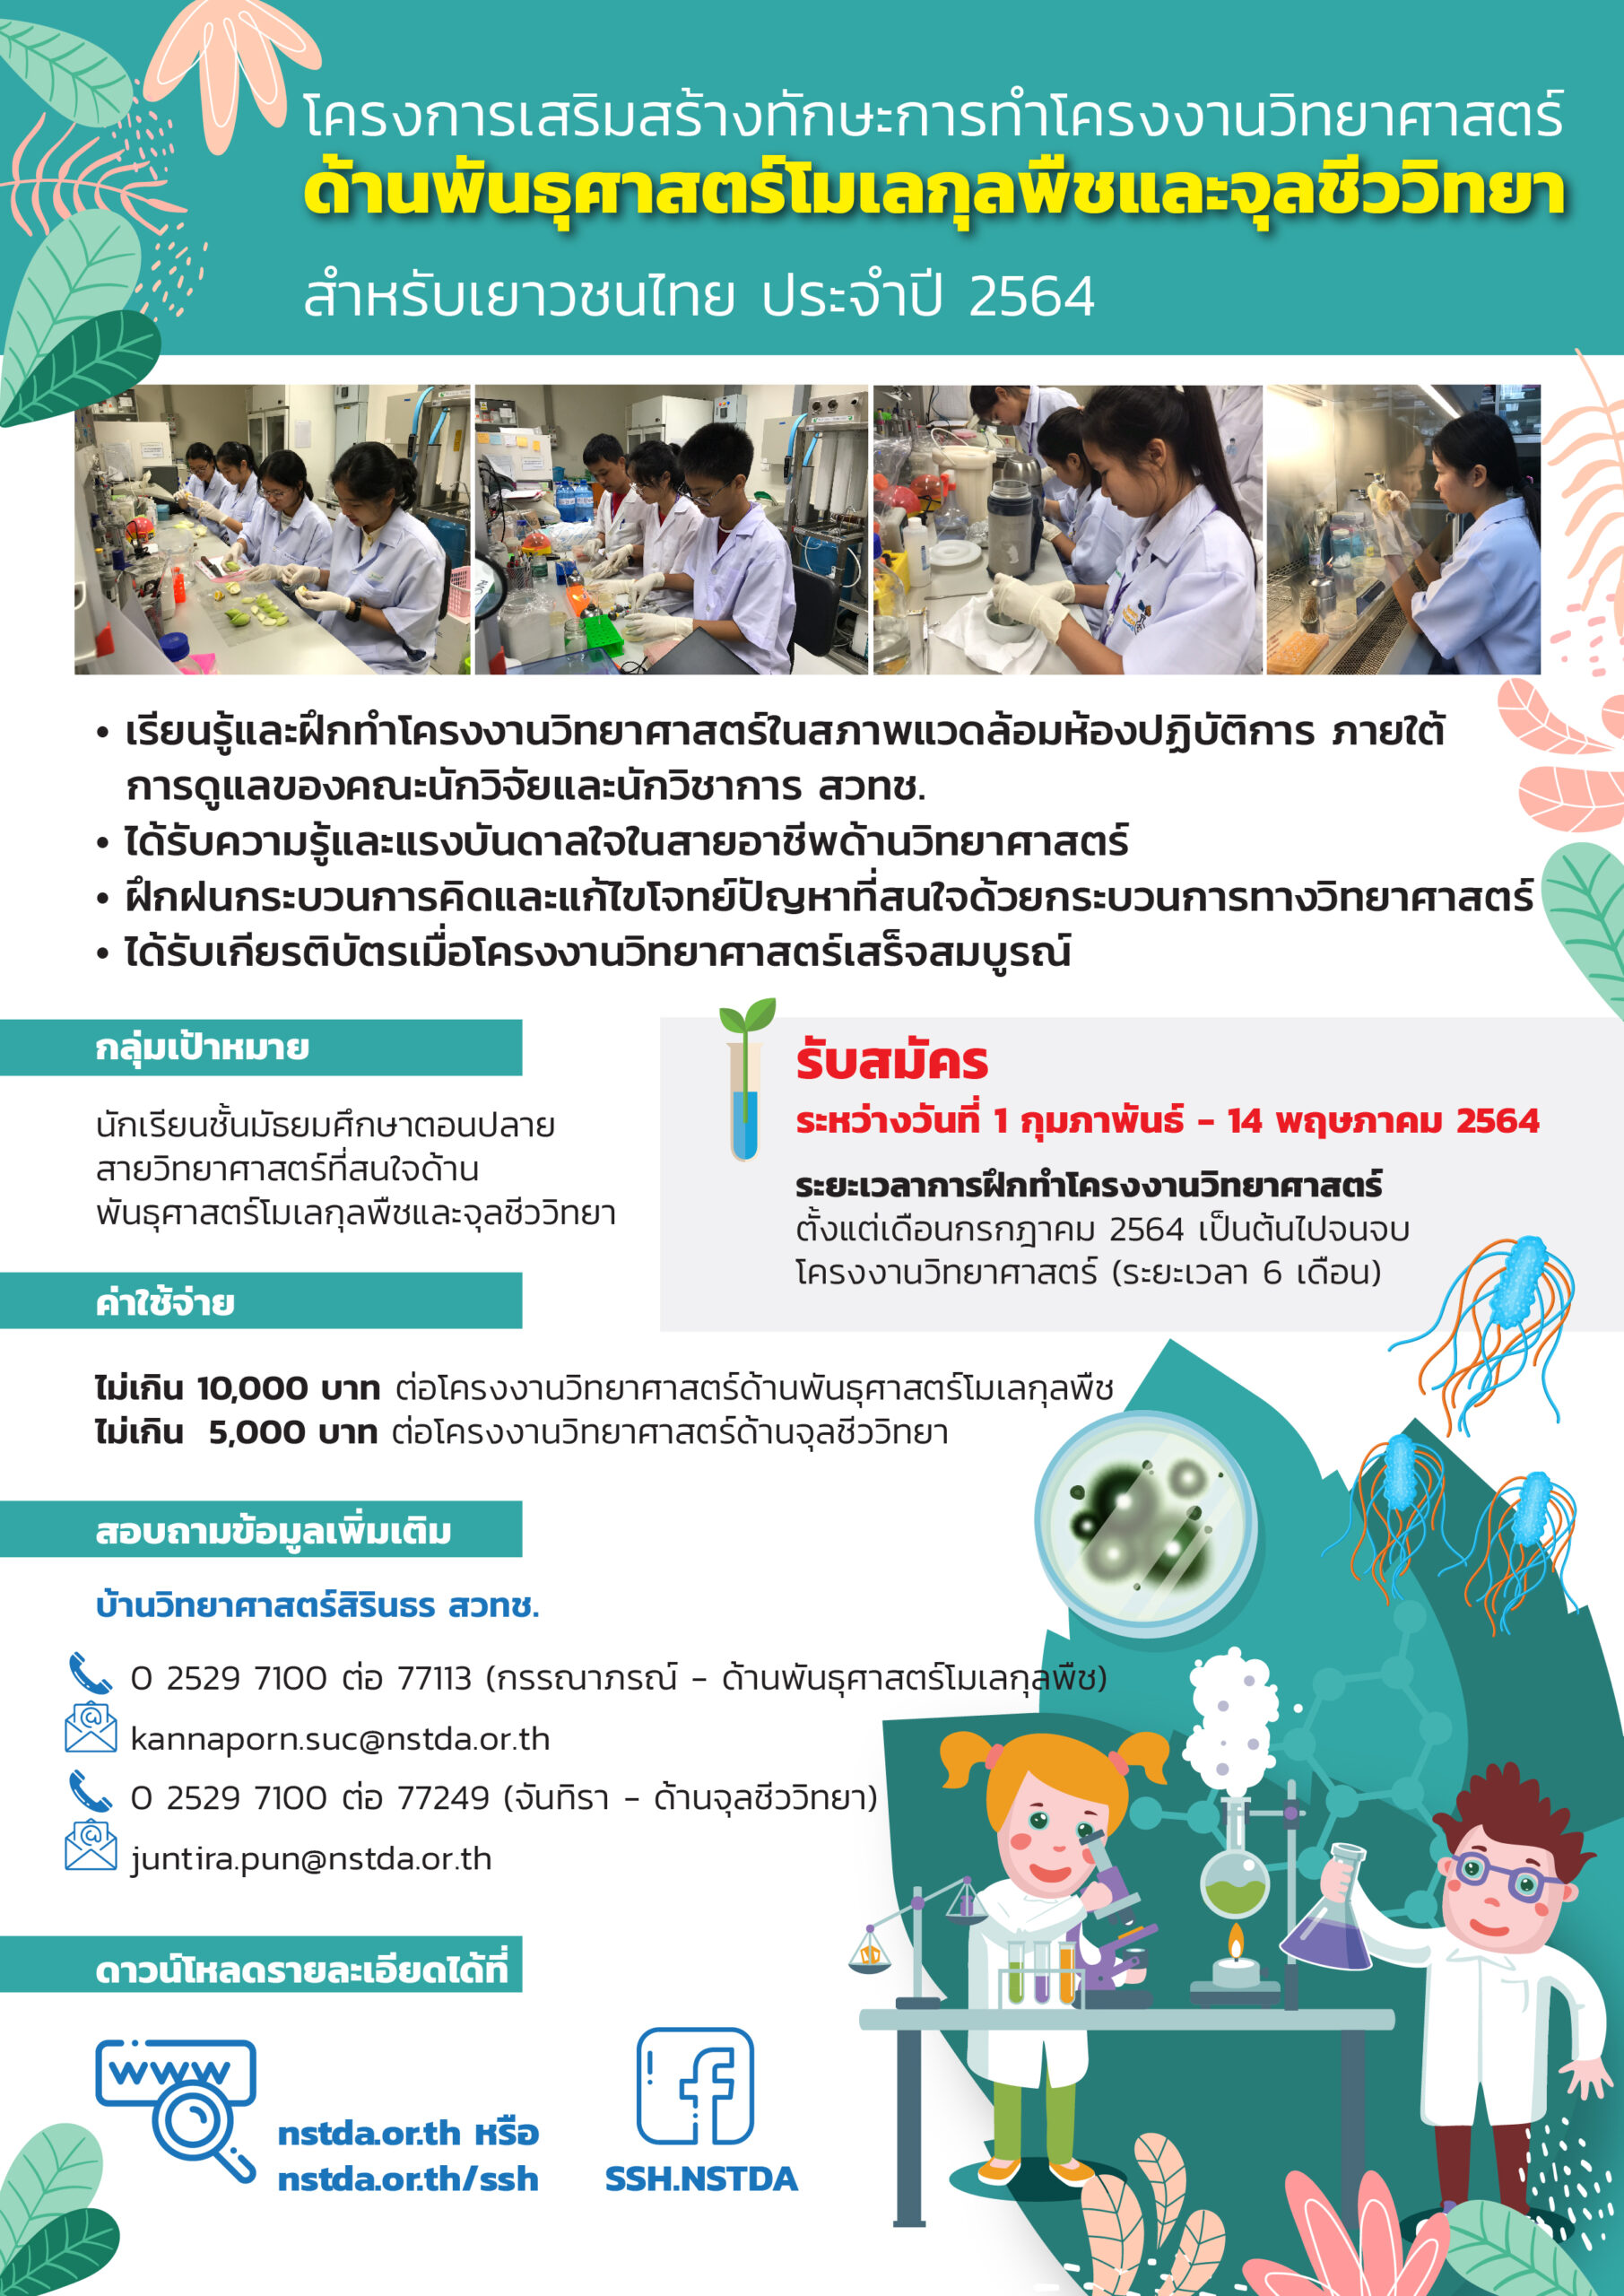 โปสเตอร์ โครงการเสริมสร้างทักษะการทำโครงงานวิทยาศาสตร์ด้านพันธุศาสตร์โมเลกุลพืชและจุลชีววิทยาสำหรับเยาวชนไทย ประจำปี 2564